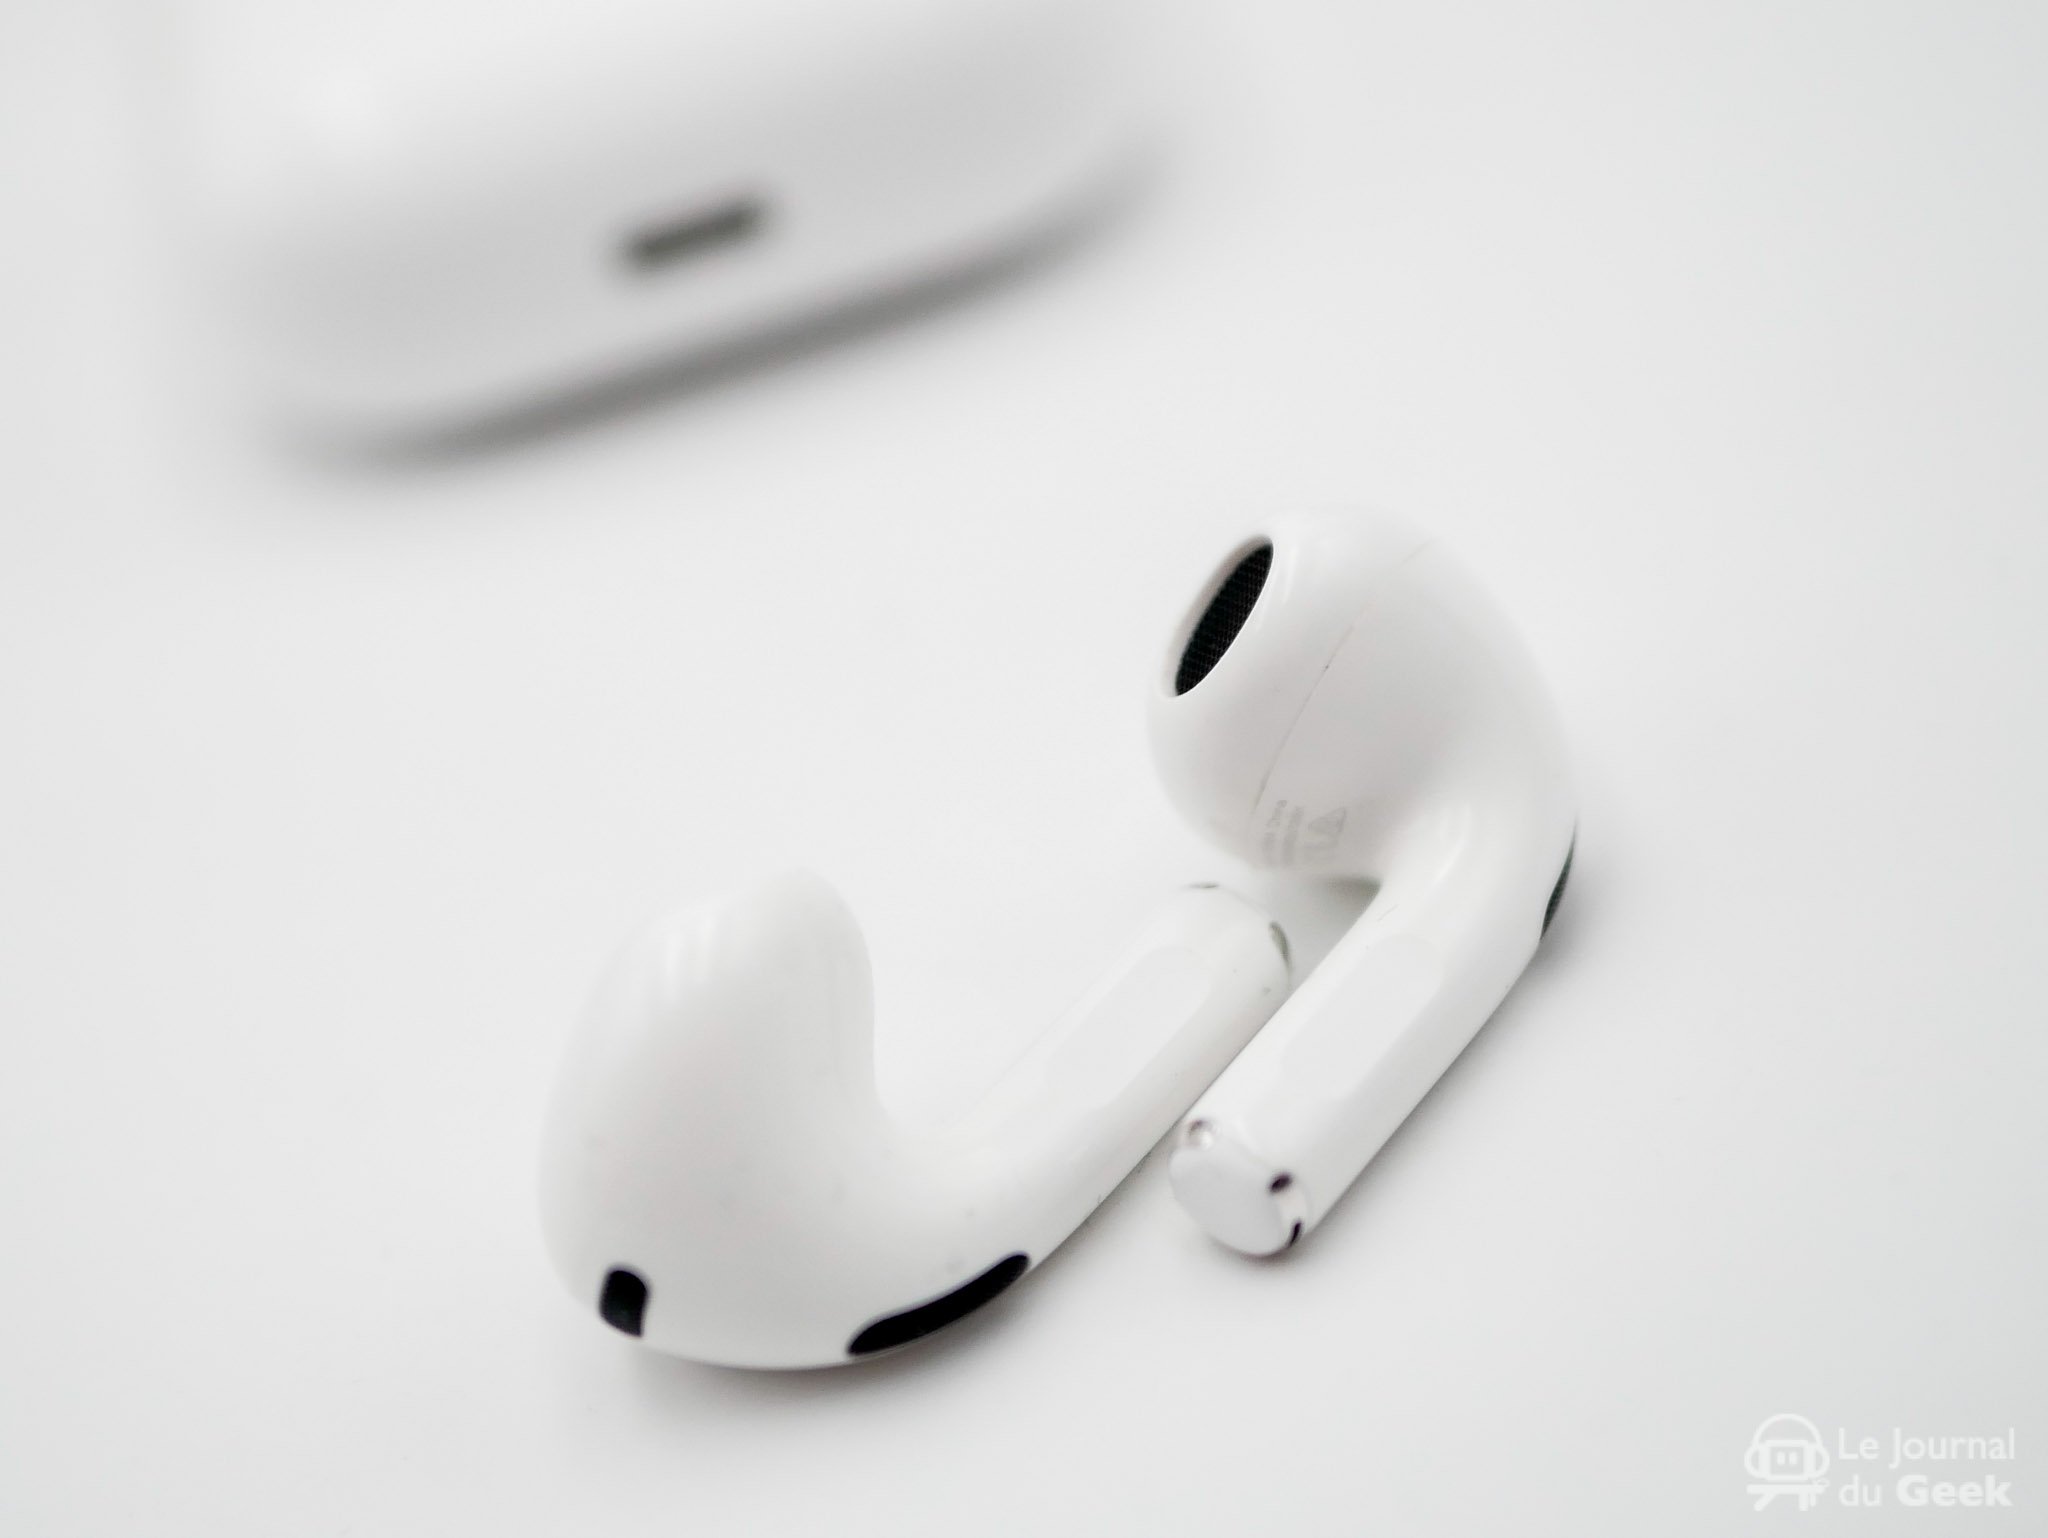 Apple lance enfin ses écouteurs sans fil AirPods